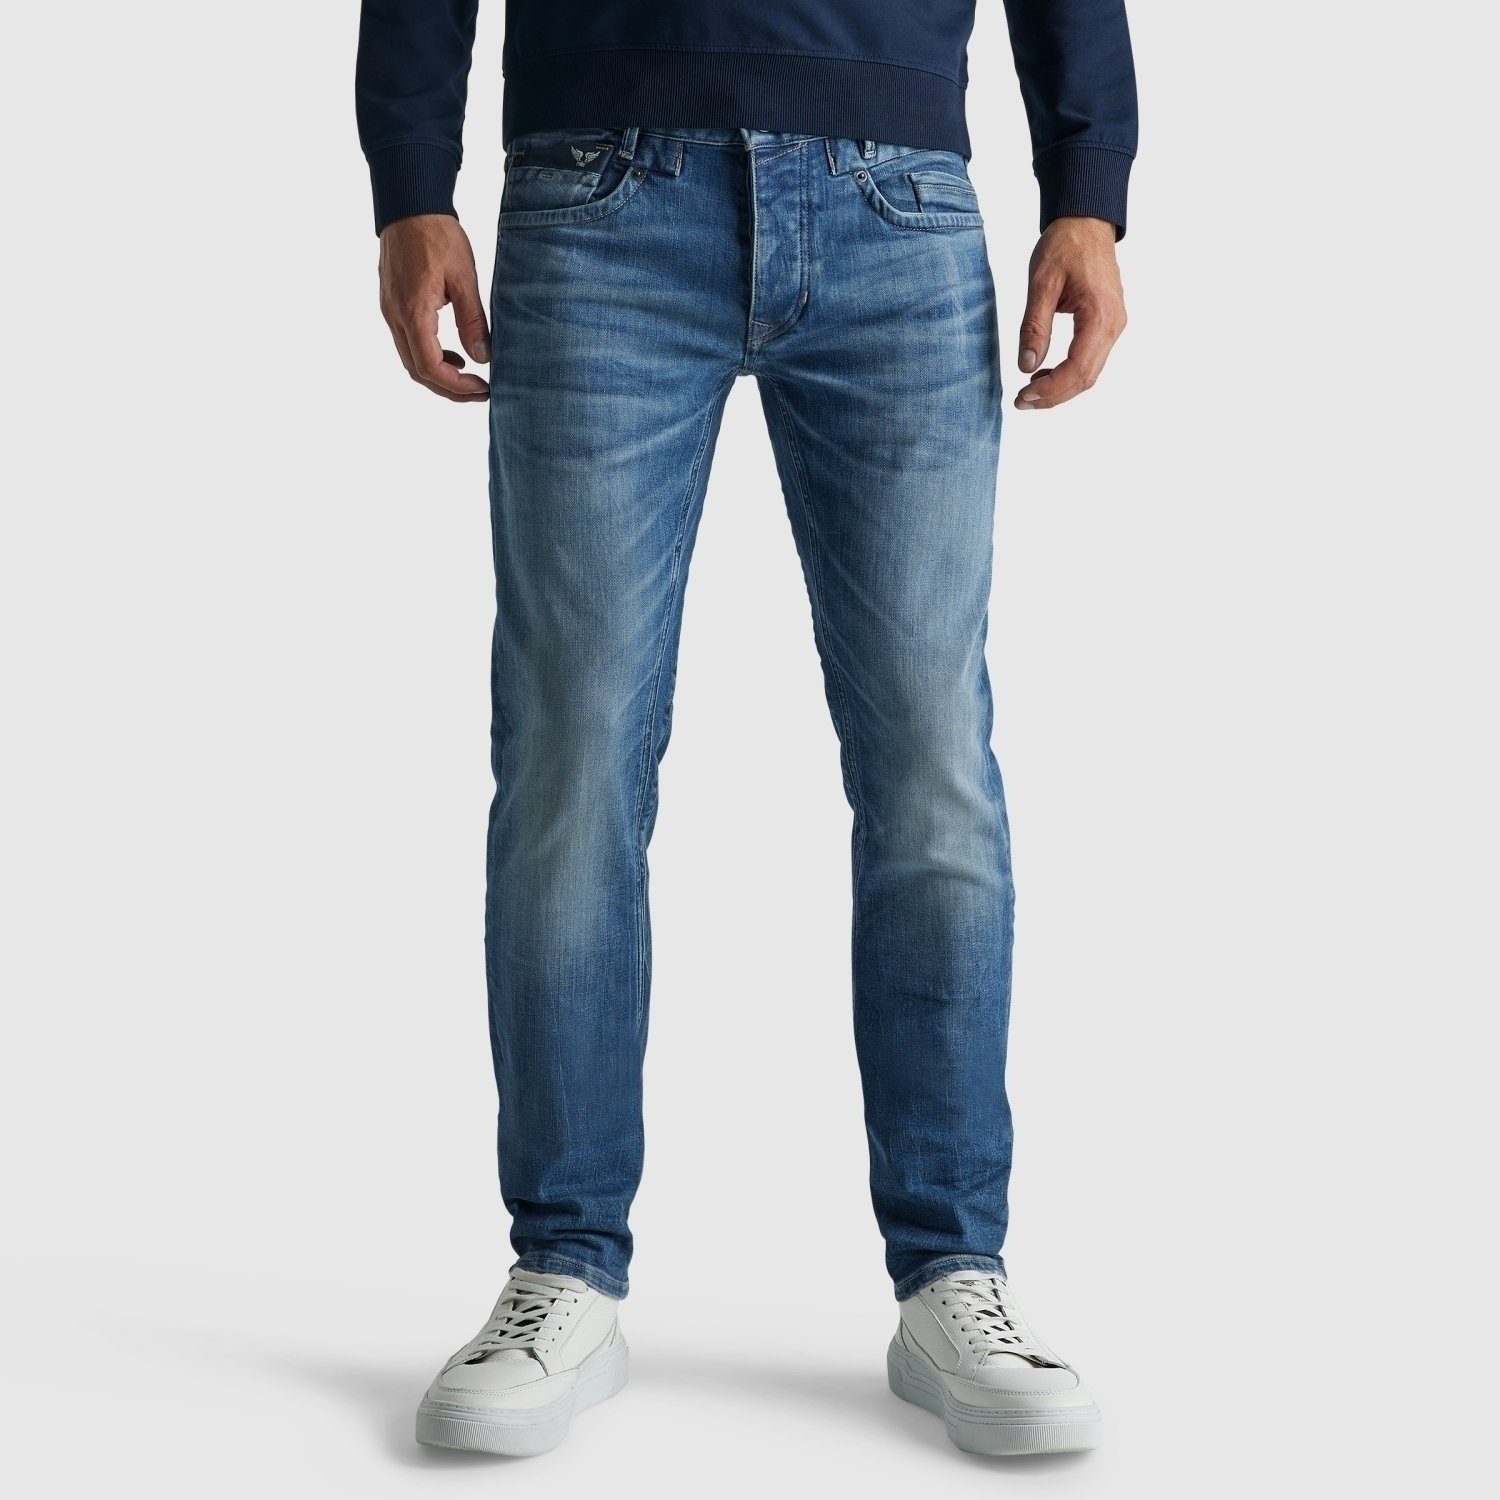 PME LEGEND Röhrenjeans COMMANDER 3.0 FRESH MID BLUE | Skinny Jeans